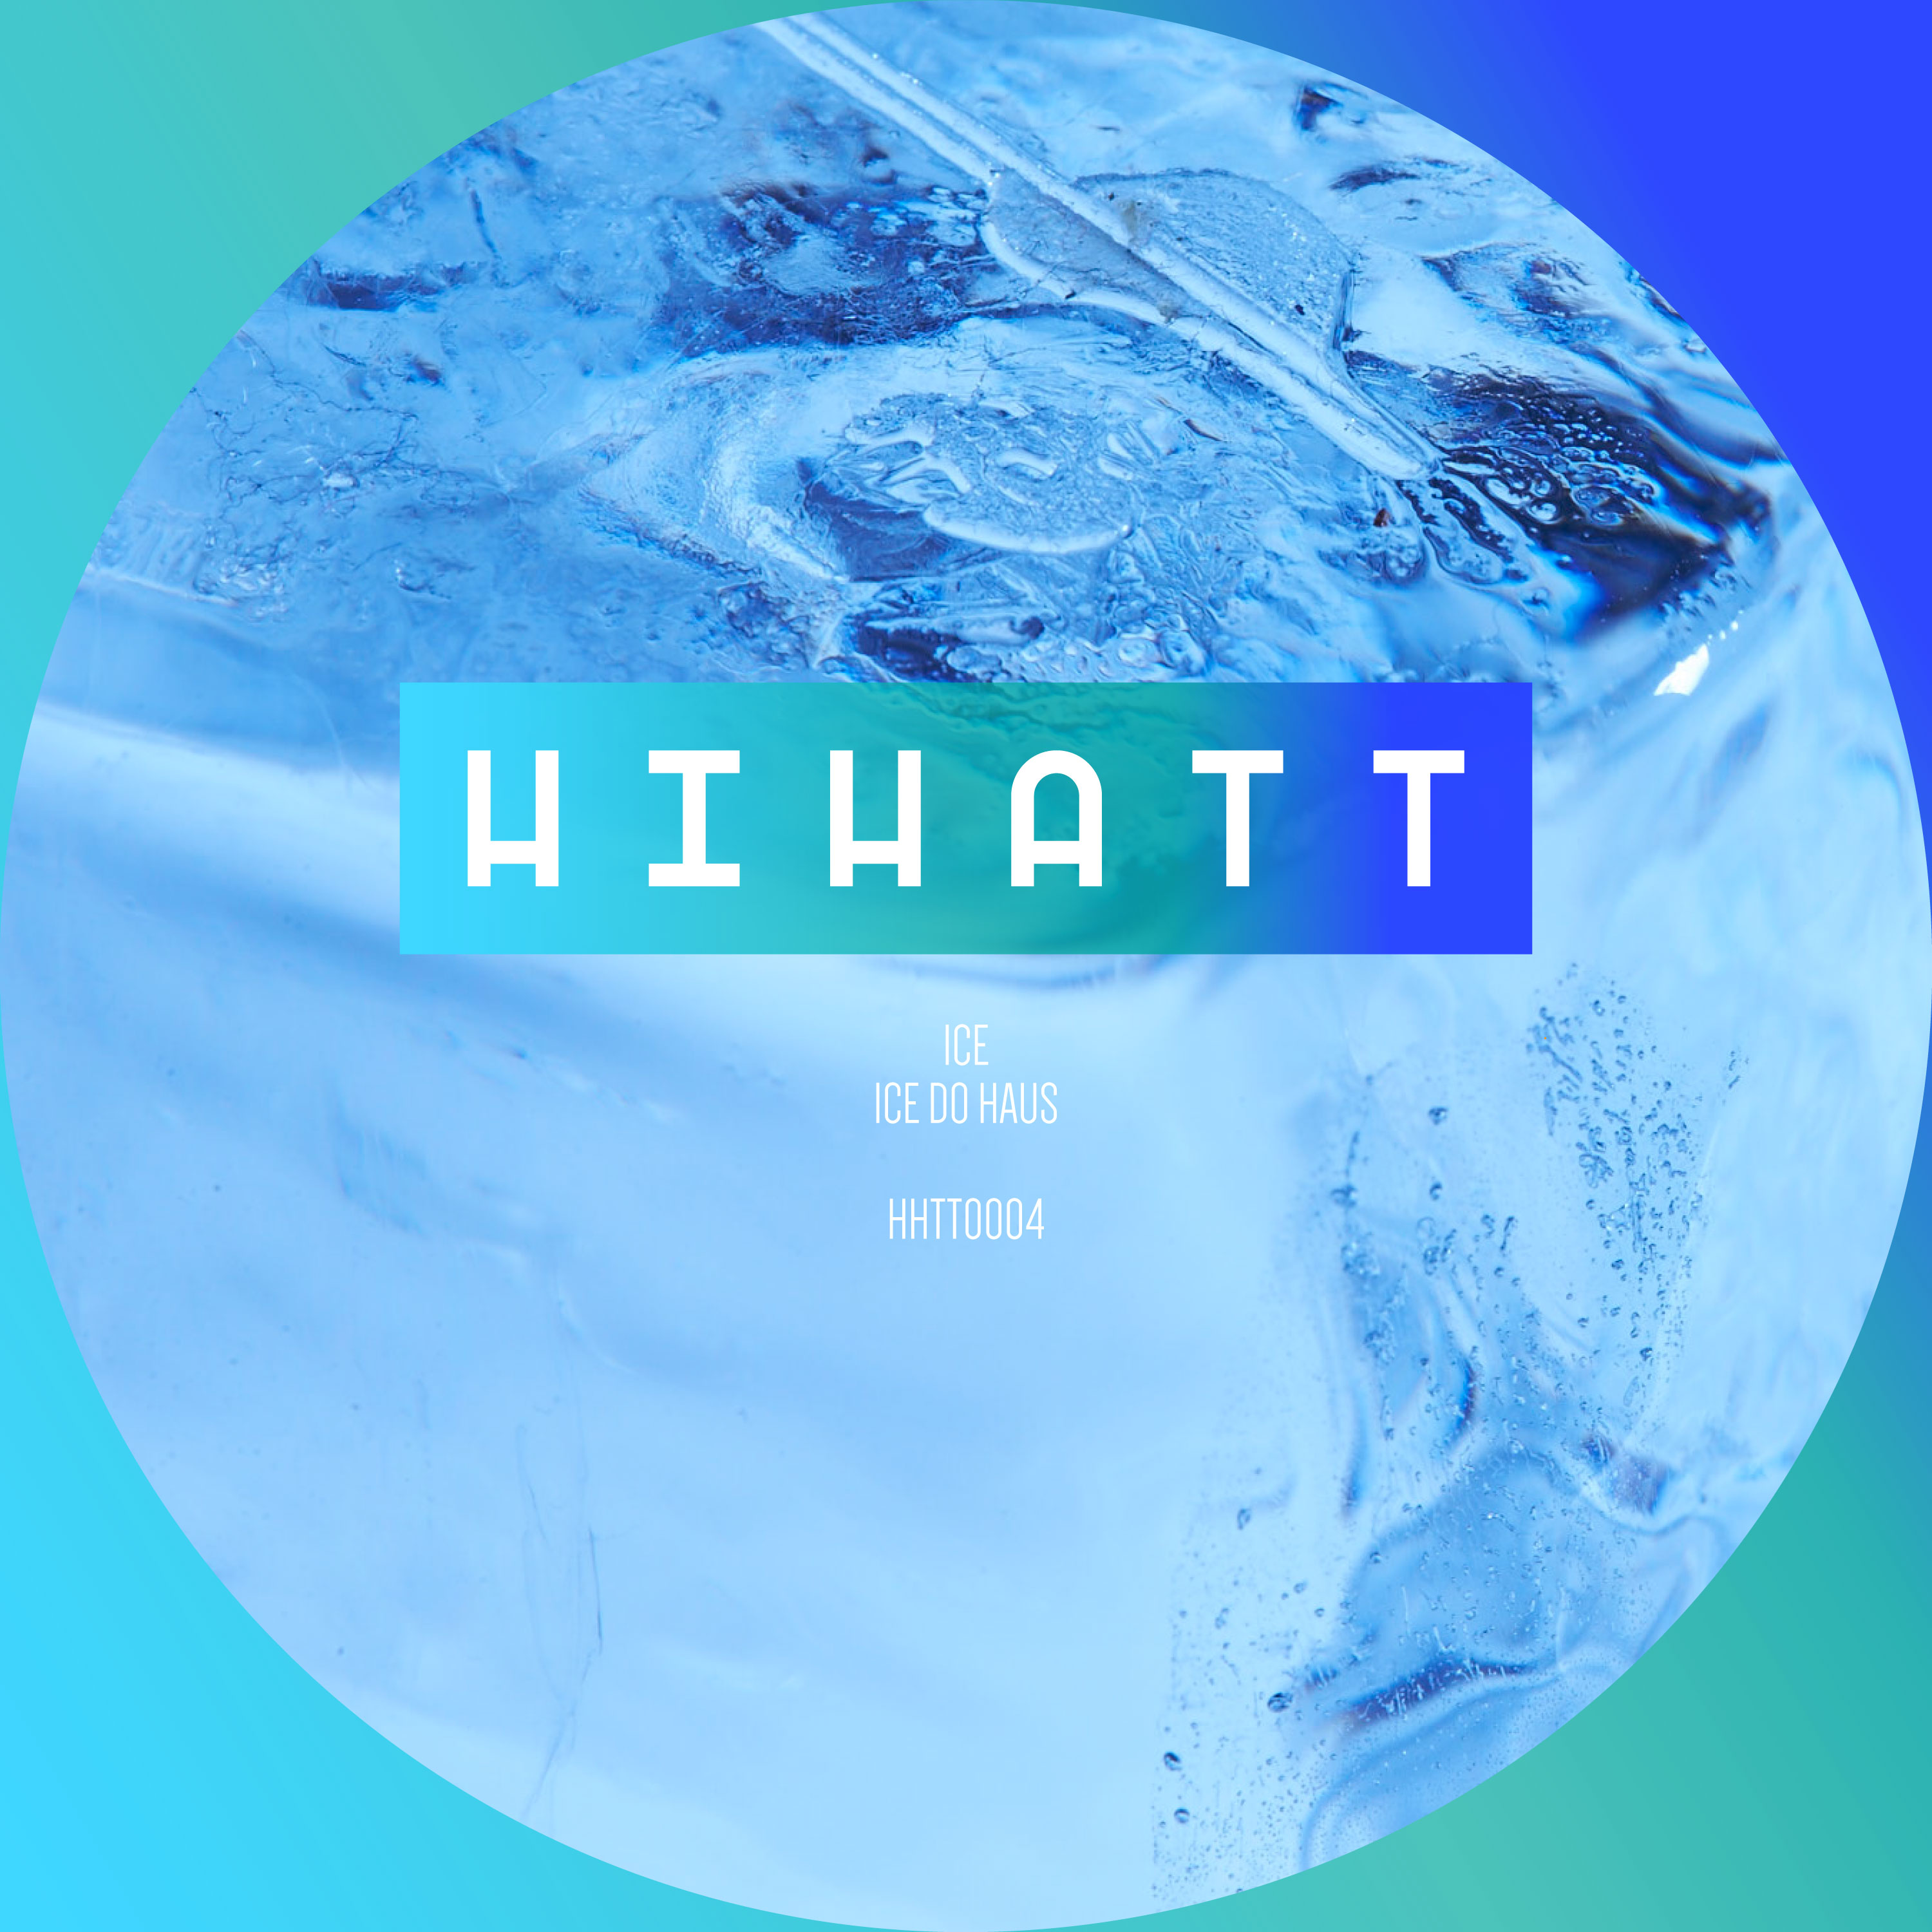 HHTT0004 ICE – ICE DO HAUS